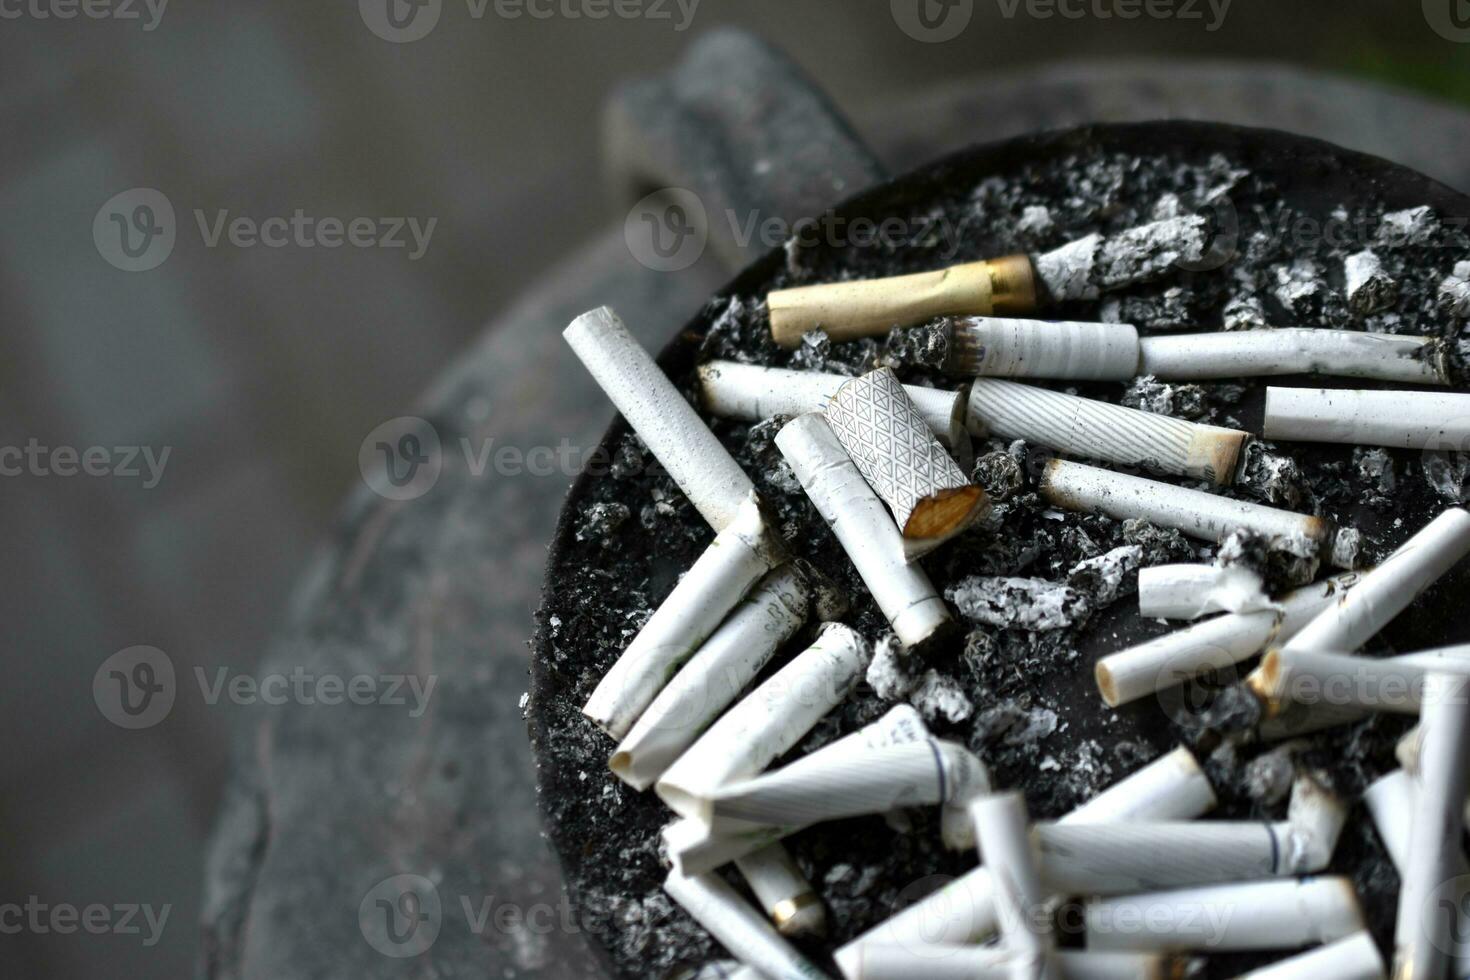 een asbakje voor sigaret peuken Aan de straat. gerookt sigaretten in de afval. foto